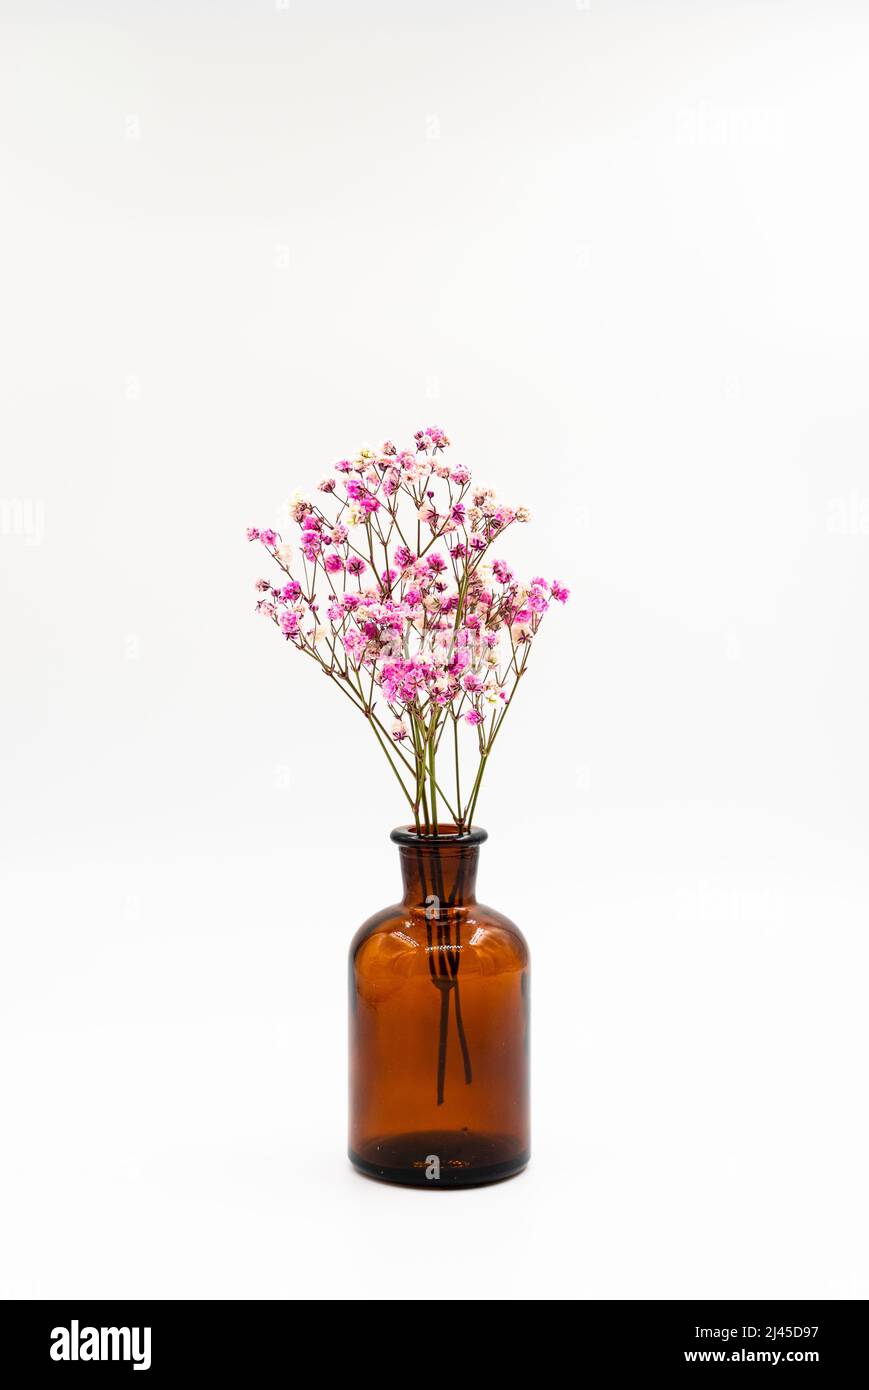 Flores secas en un viejo tarro de farmacia, ahora utilizado como jarrón sobre un fondo blanco. Fotografías de alta calidad Foto de stock